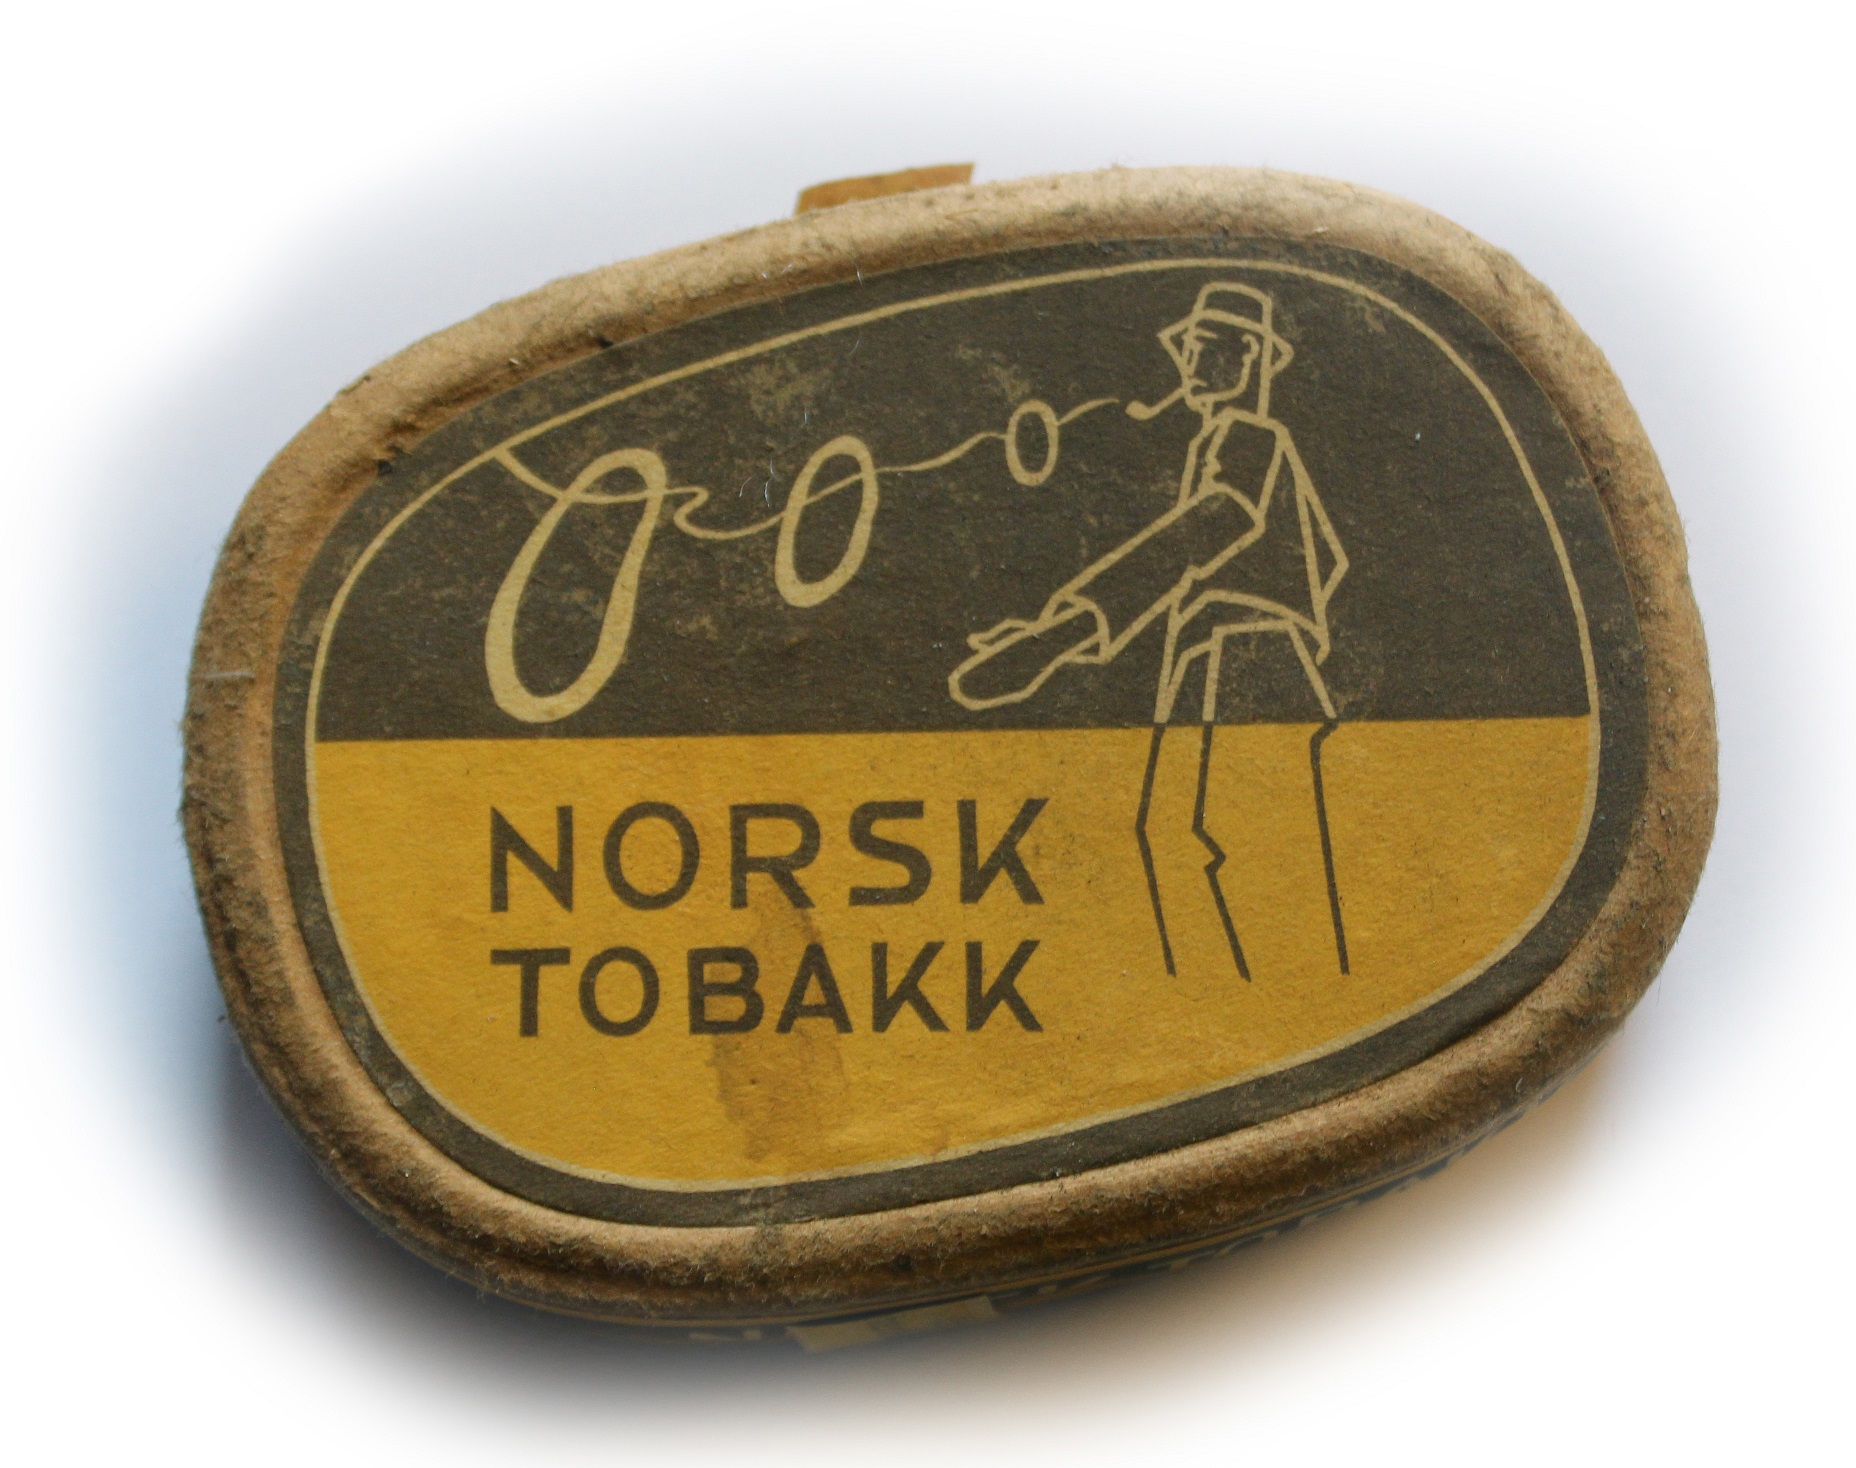 Norsk tobakk